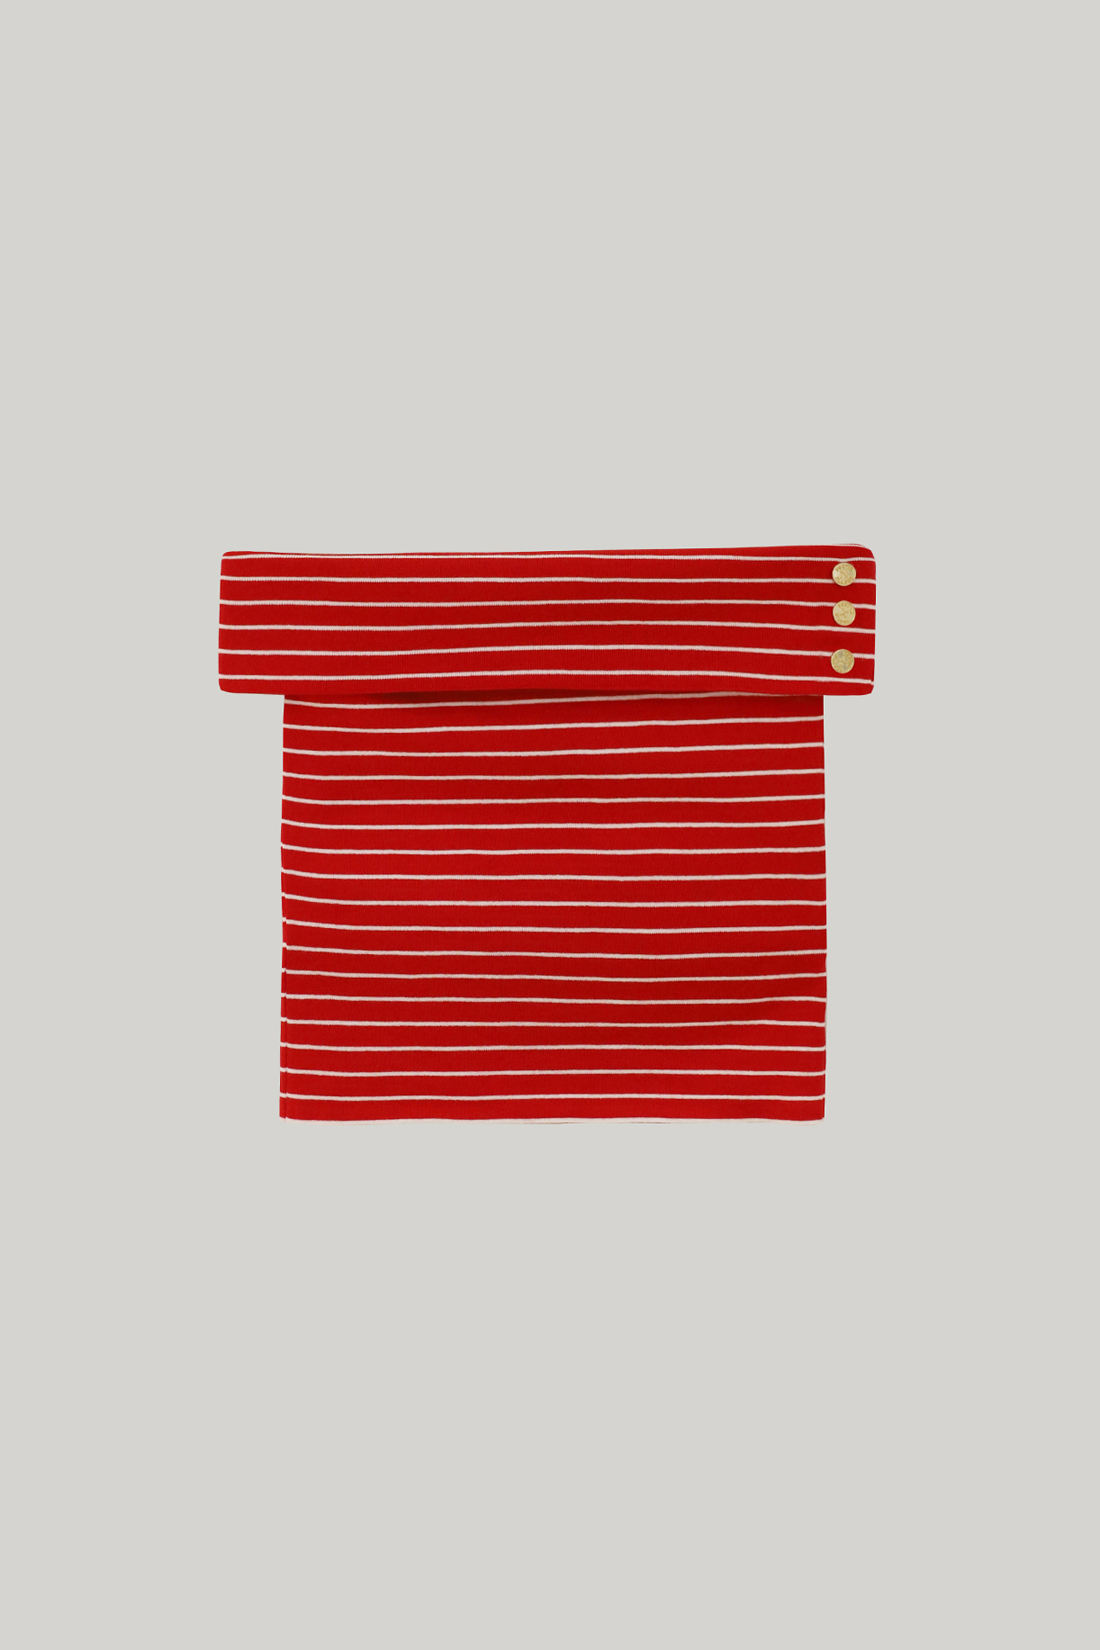 Hans Off-Shoulder Knit Top (Red Stripe)